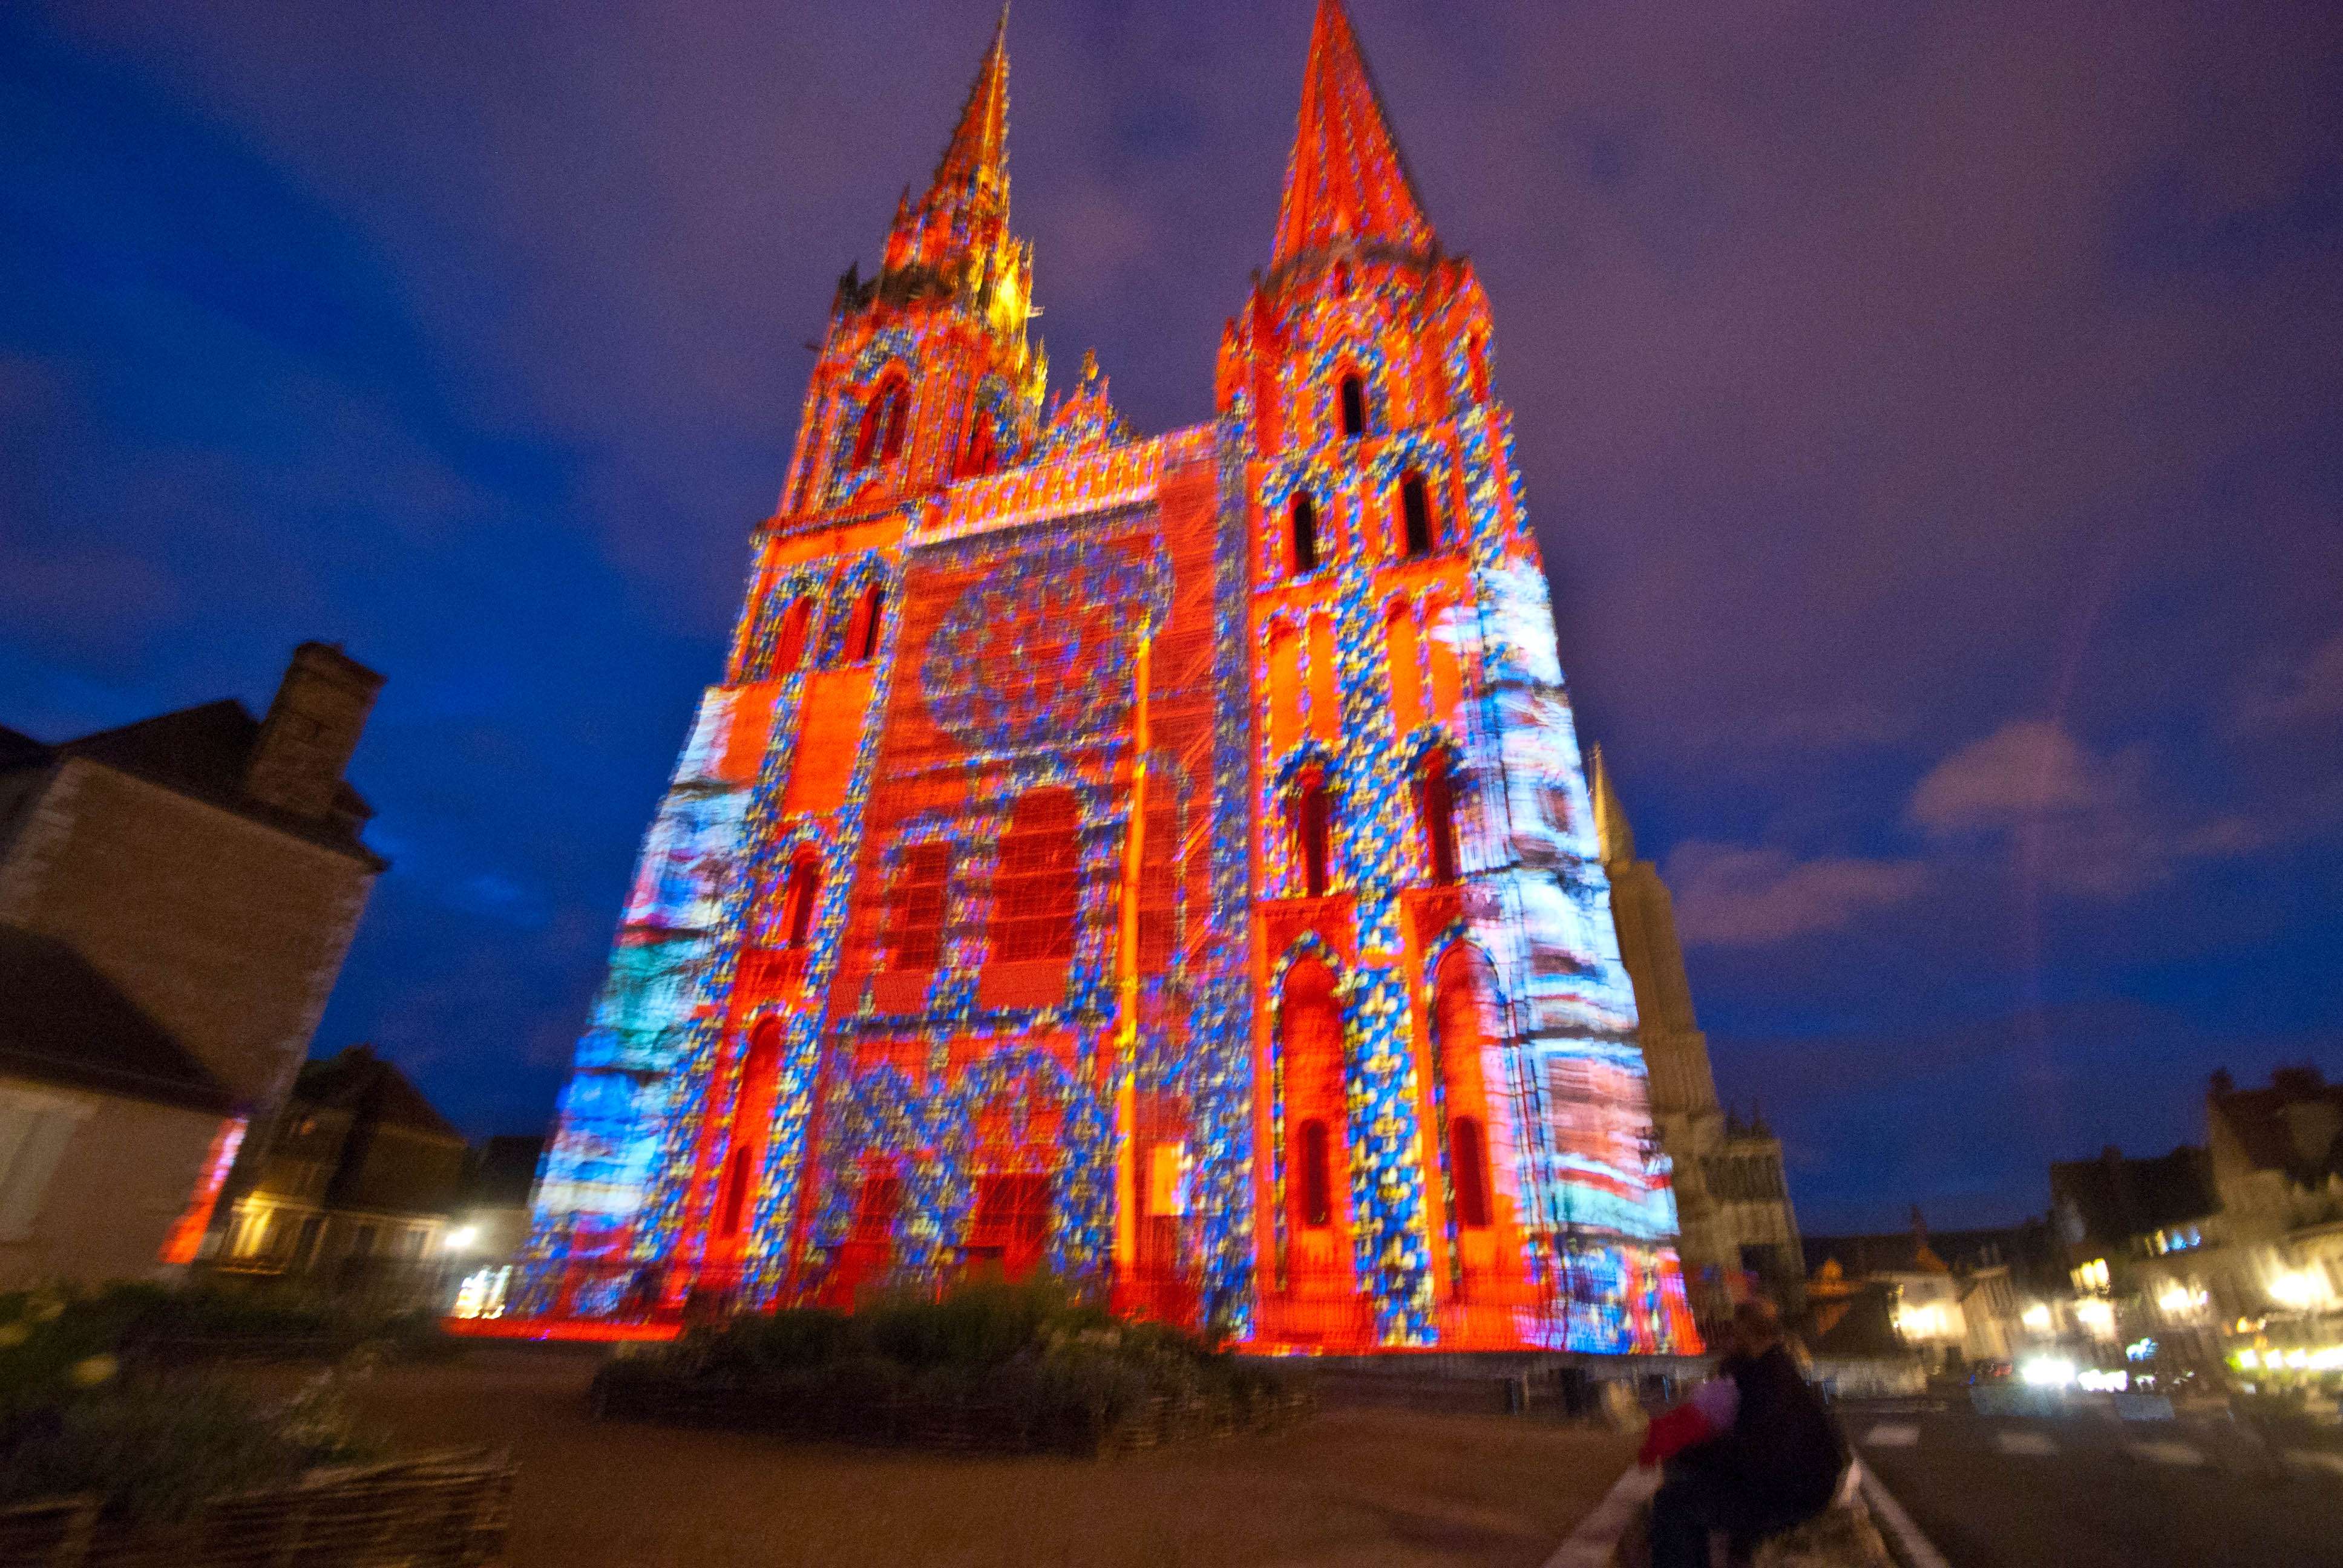 Chartres. Acceso, Alojamiento, Restaurantes y Actividades - Chartres: Arte, espiritualidad y esoterismo. (12)